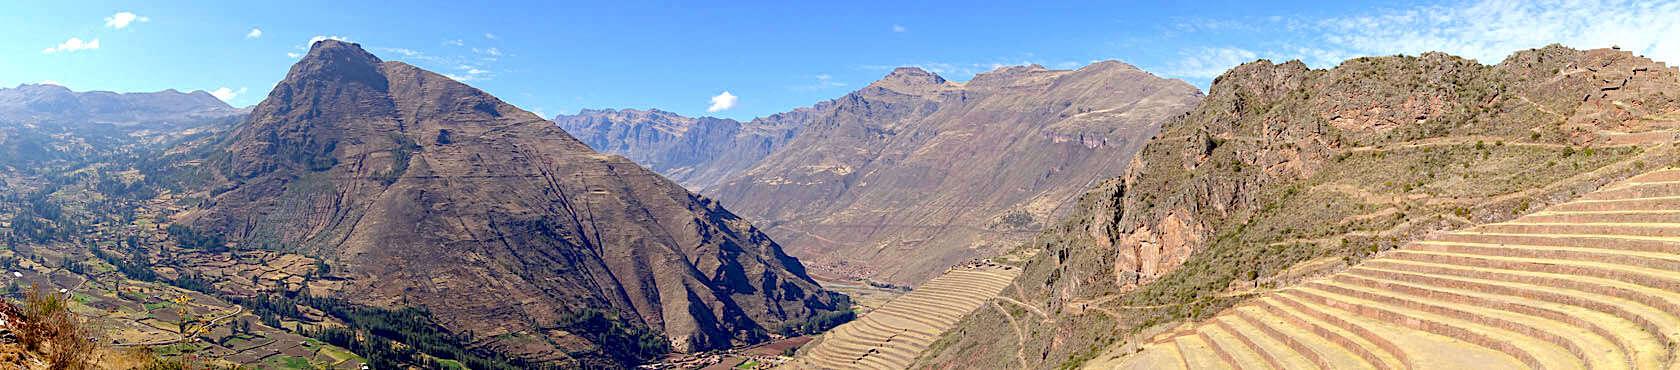 Panoramafoto von Pisaq, einer der wichtigsten spirituellen Ausbildungsorte der Inkas